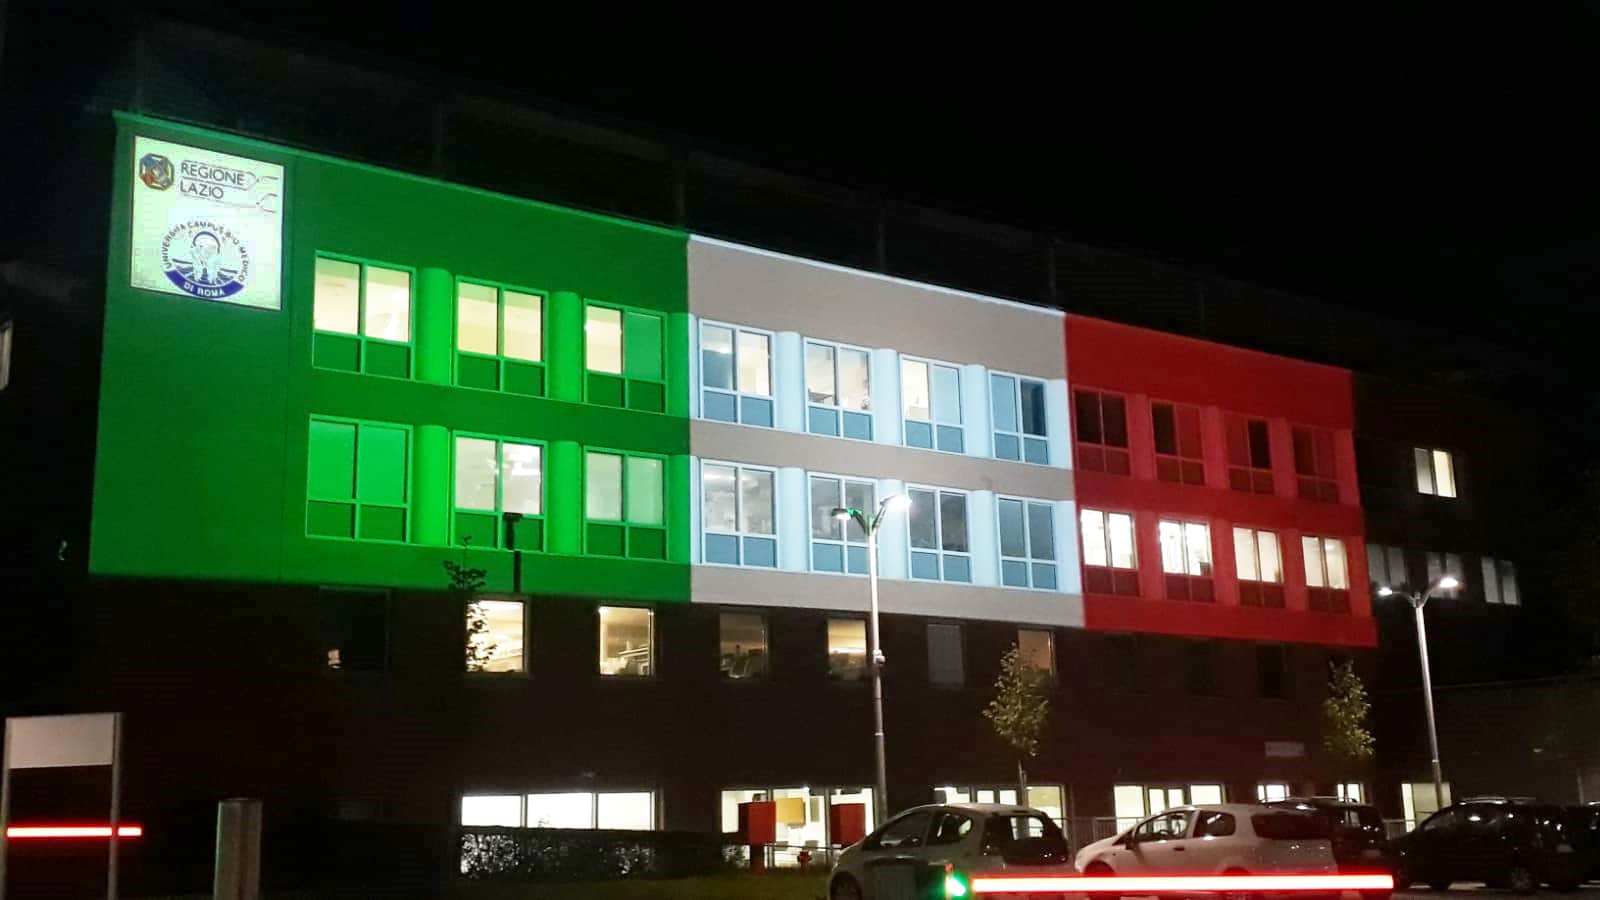 Proiezione tricolore campus biomedico roma